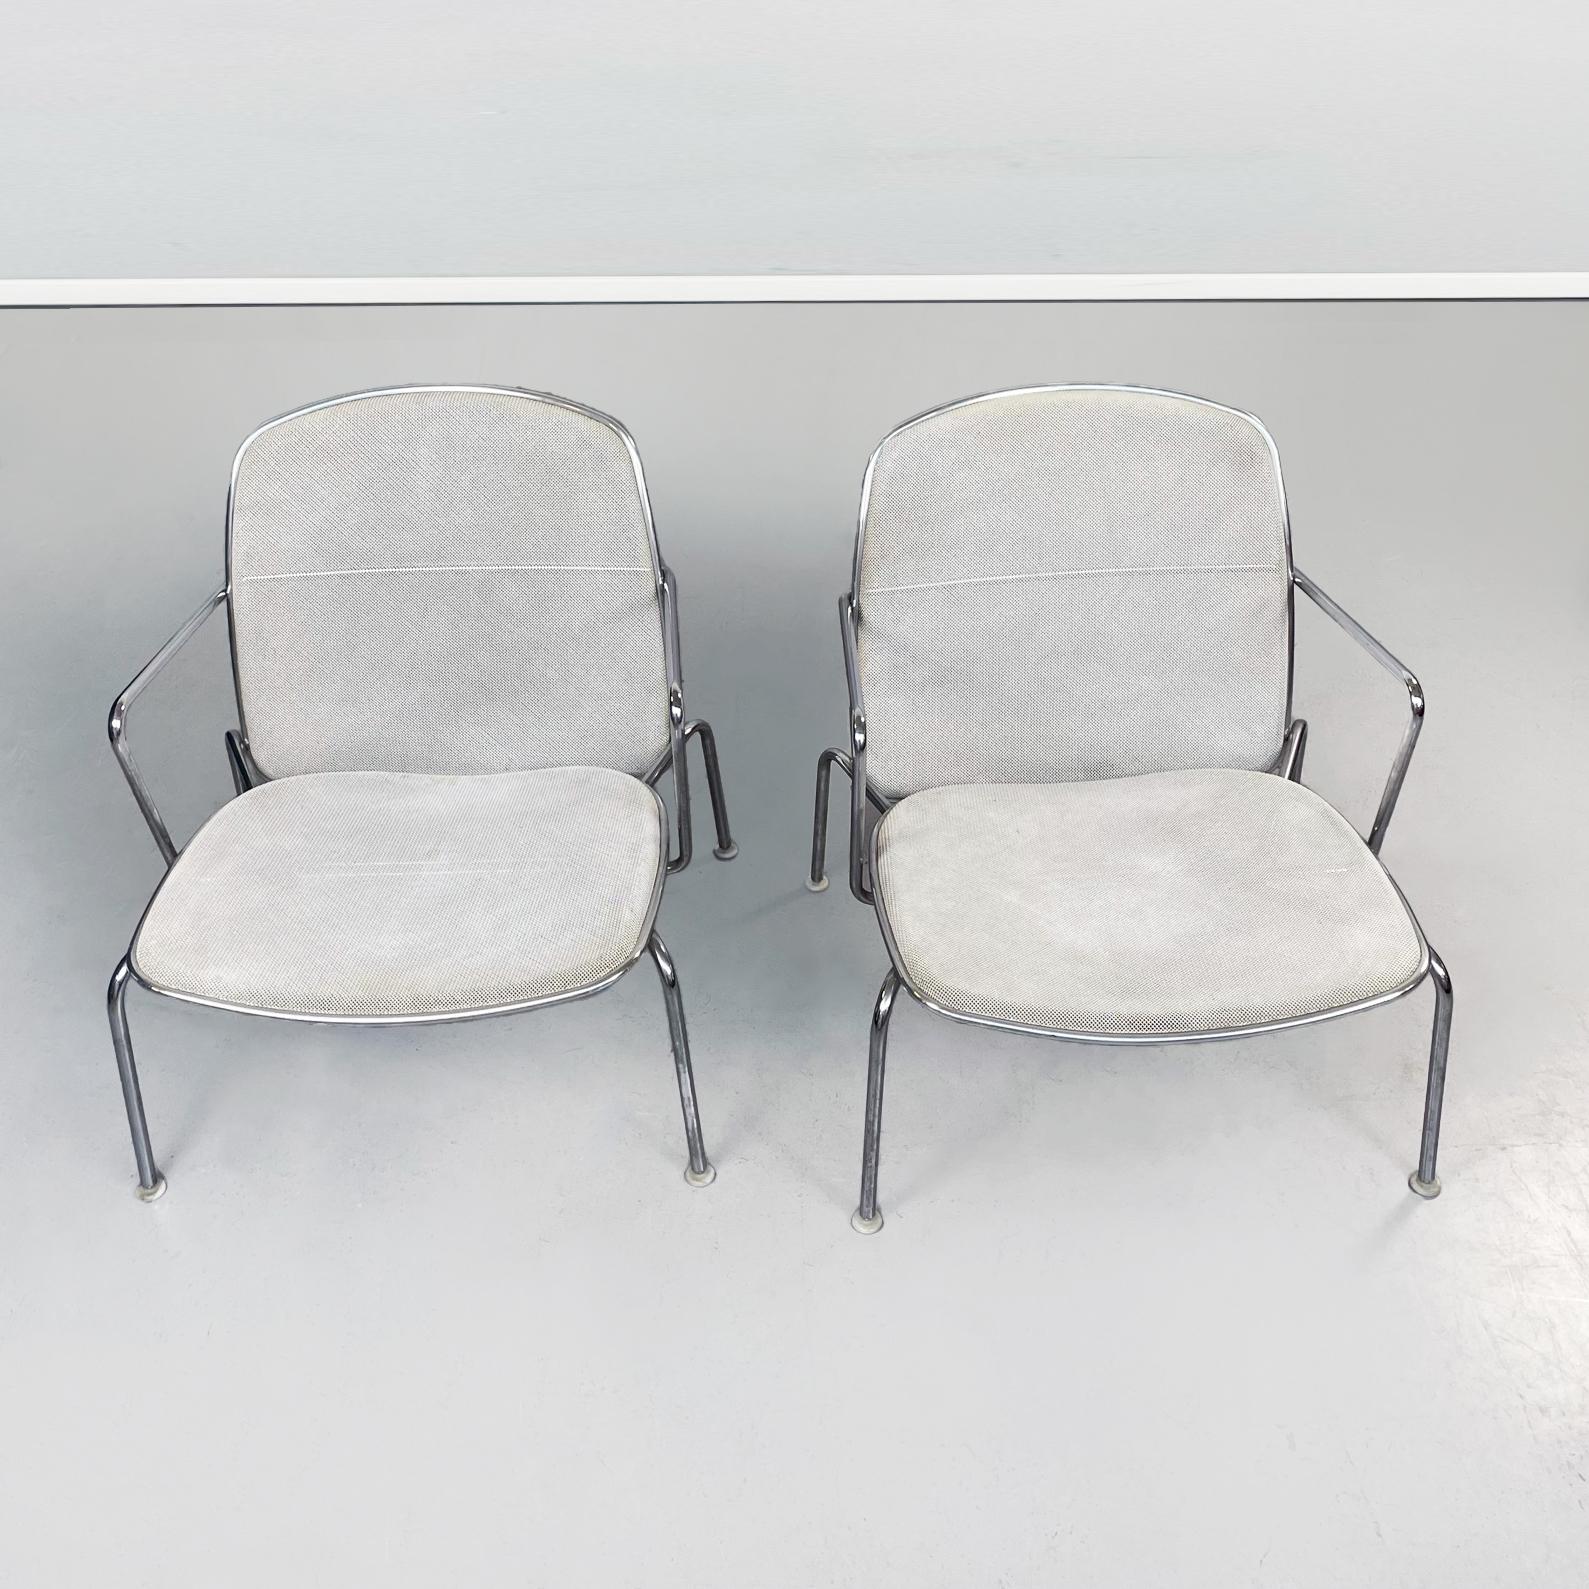 Italienisches 21. Jahrhundert Web-Sessel aus weißem Metall und Stahl von Citterio für B&B, 2000er Jahre
Paar Web-Stühle aus verchromtem Stahl. Die rechteckige Rückenlehne und der Sitz mit abgerundeten Ecken sind aus weißem Drahtgeflecht. Die